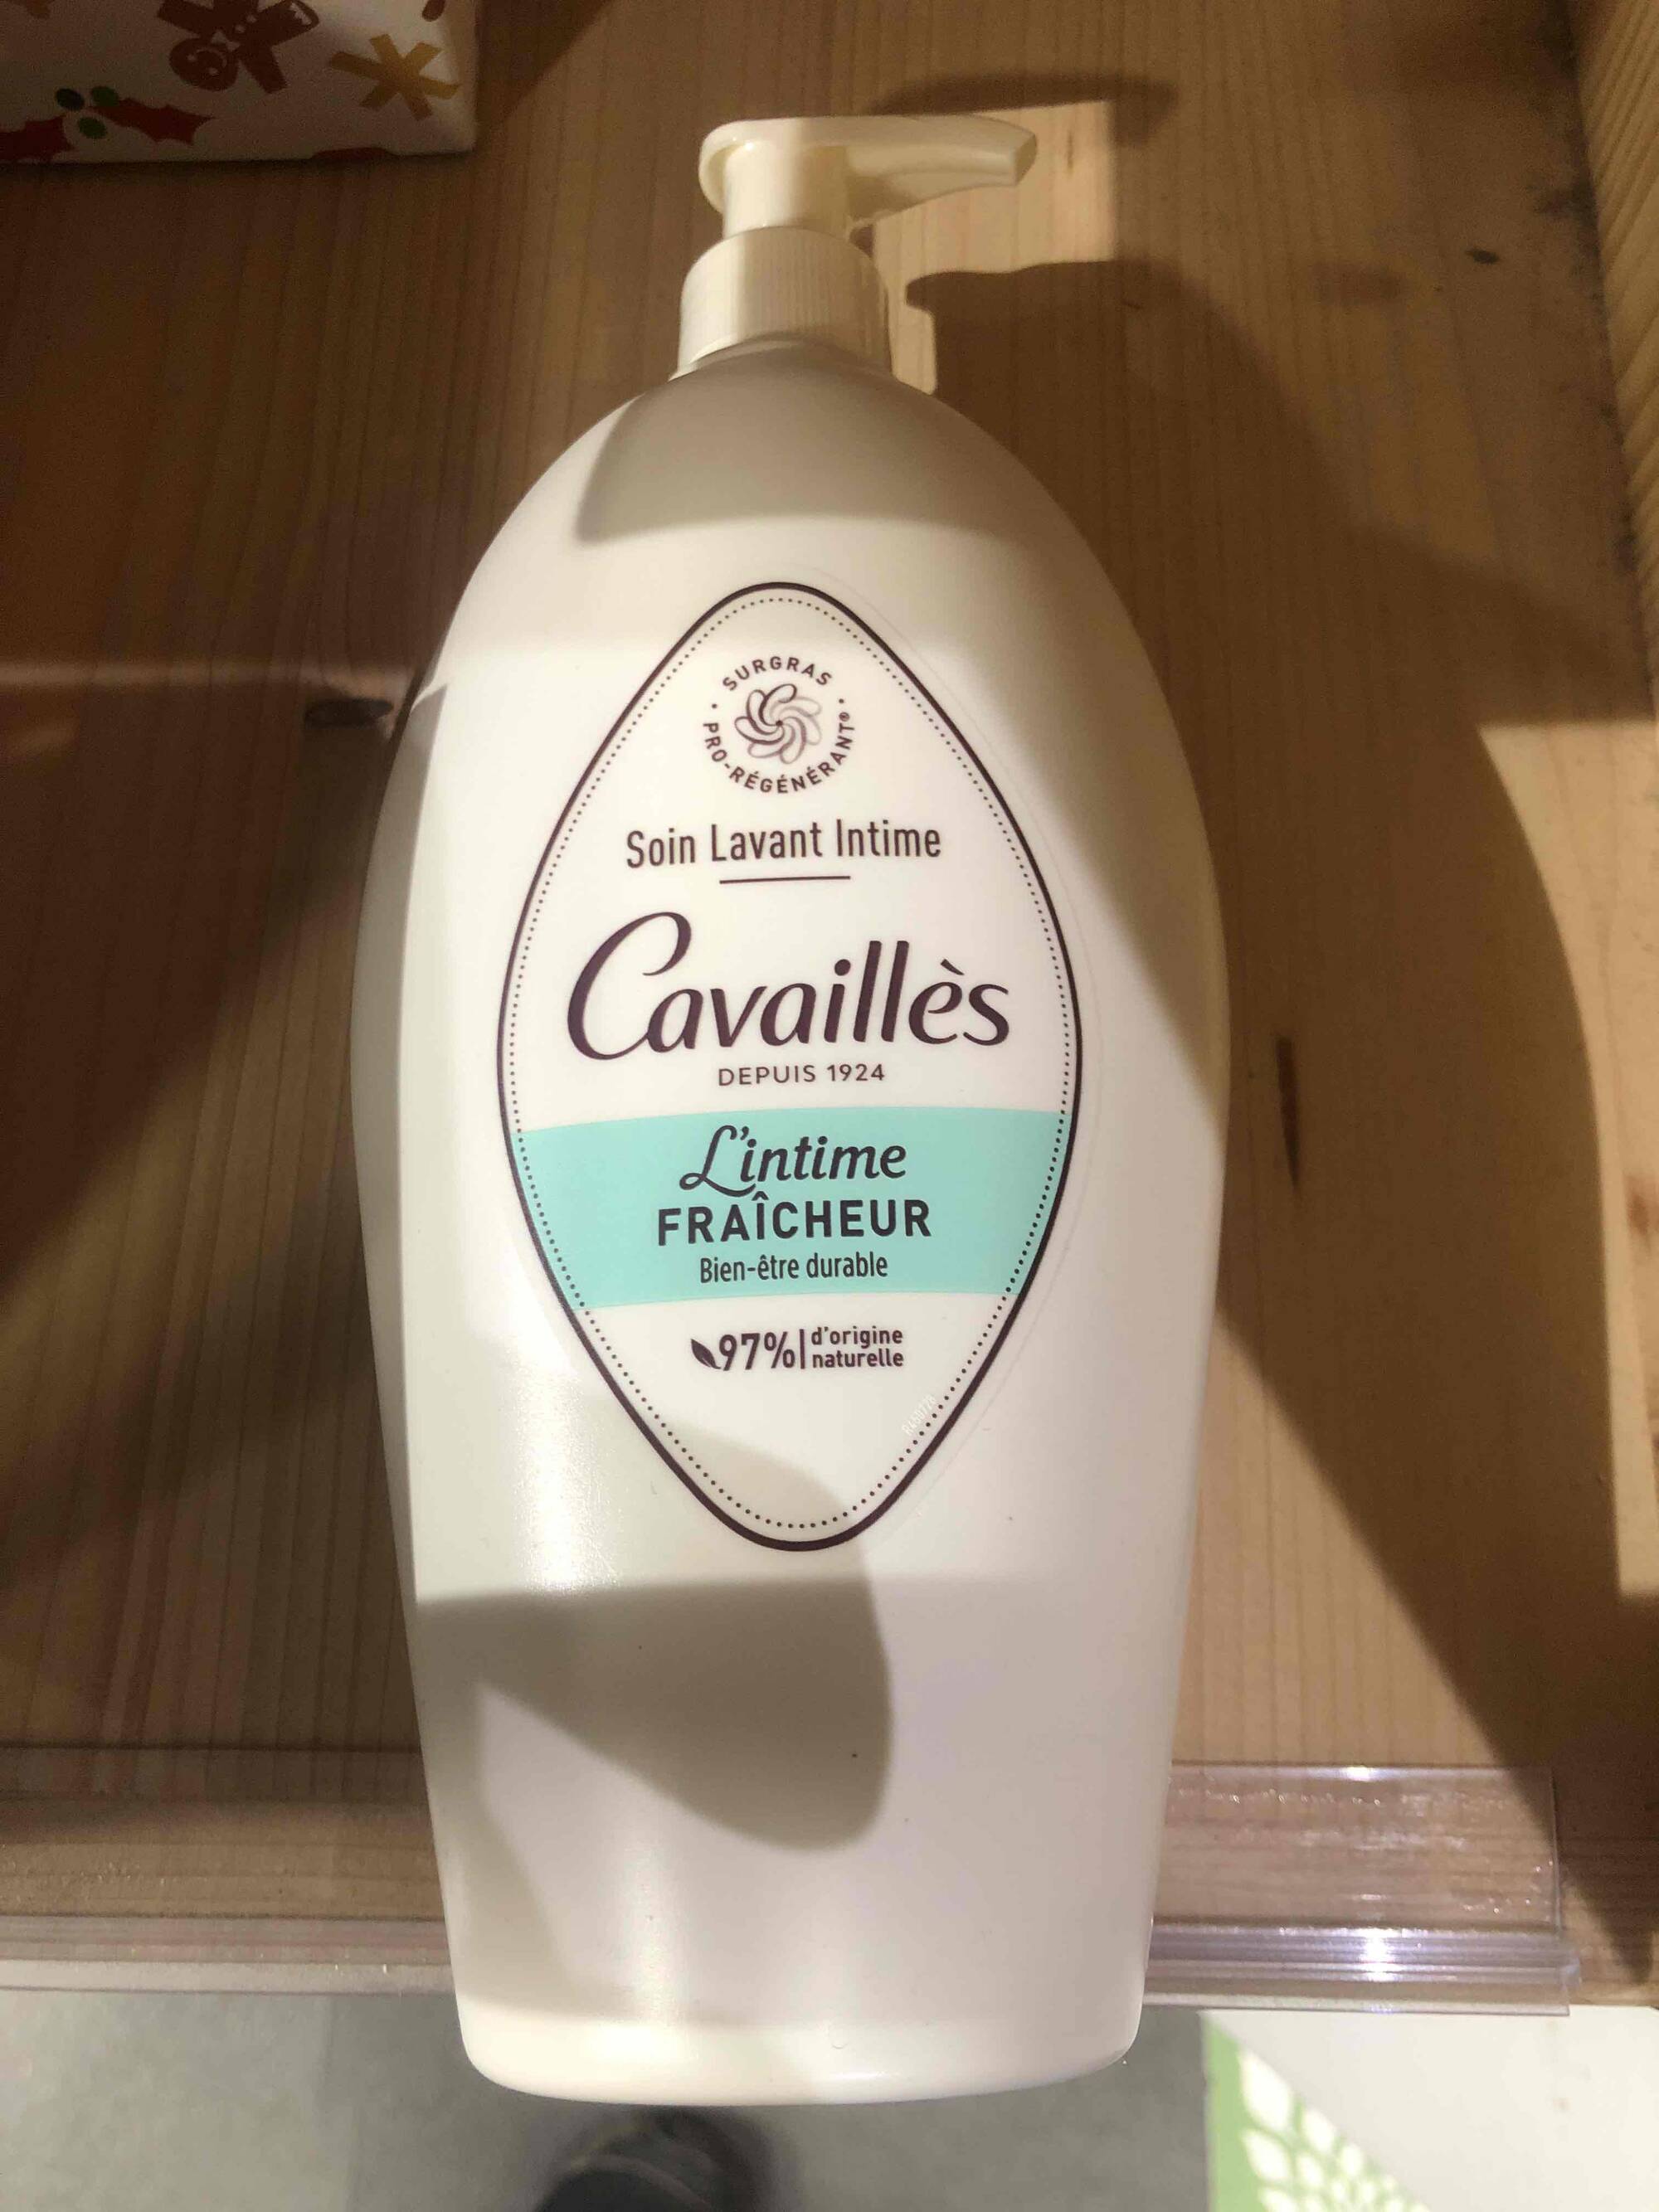 CAVAILLES - L’intime fraîcheur - Soin lavant intime